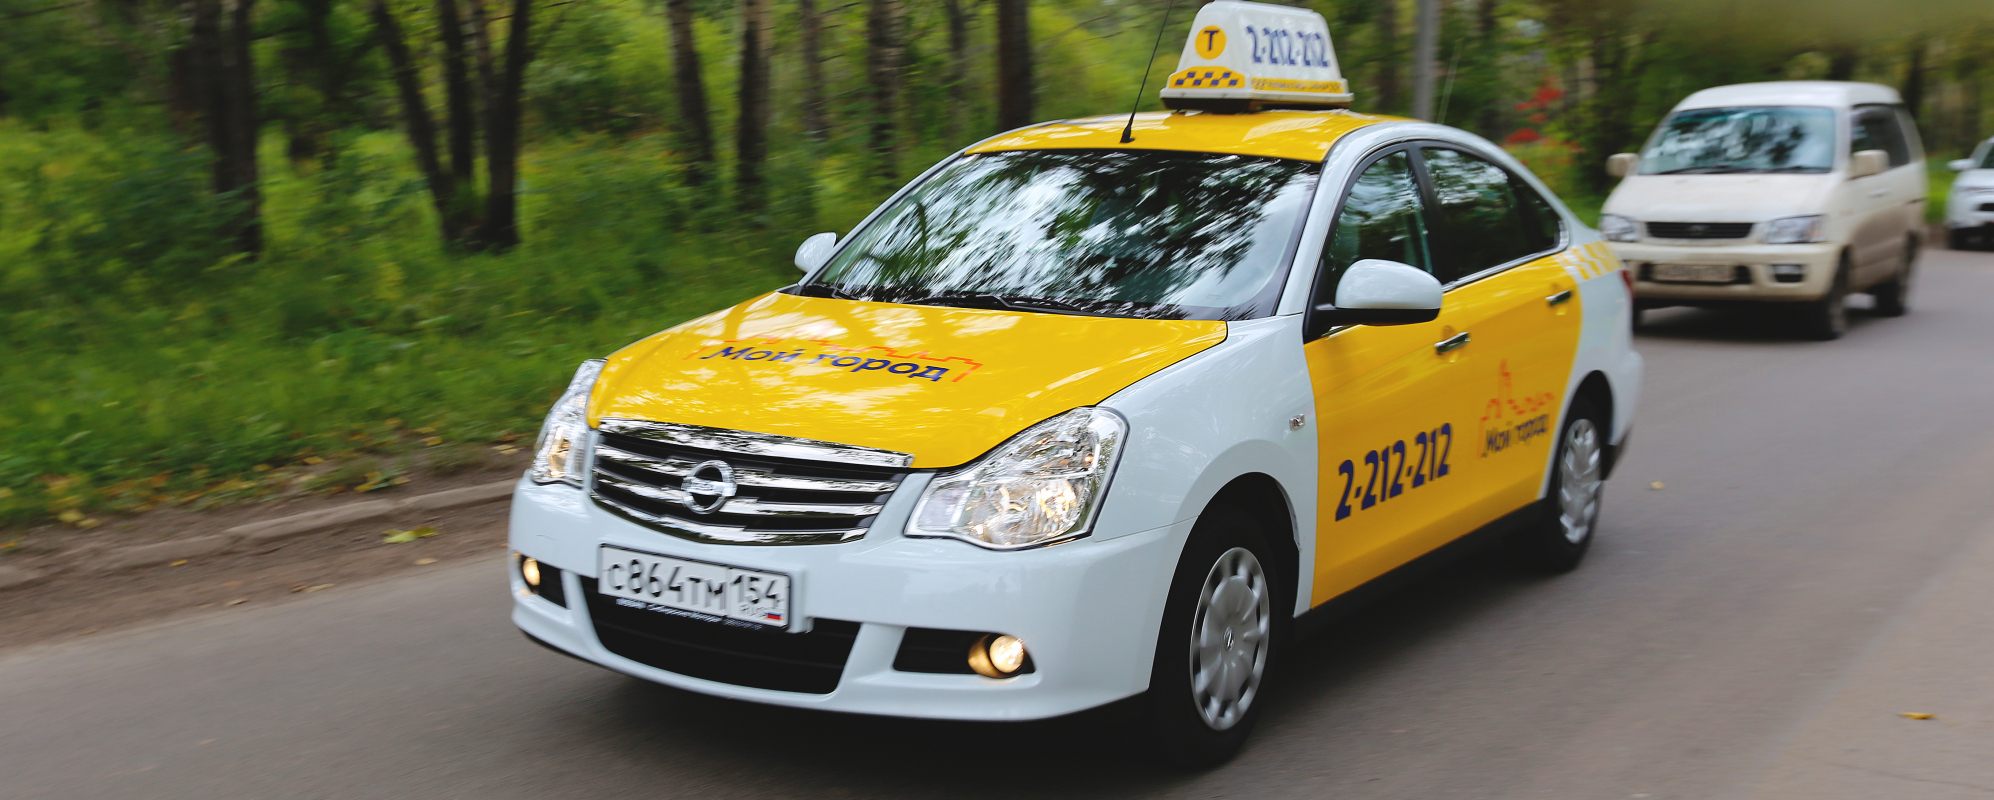 Такси трехгорный. Такси Новосибирск. Такси в городе. Такси НСК. Машина такси в городе.